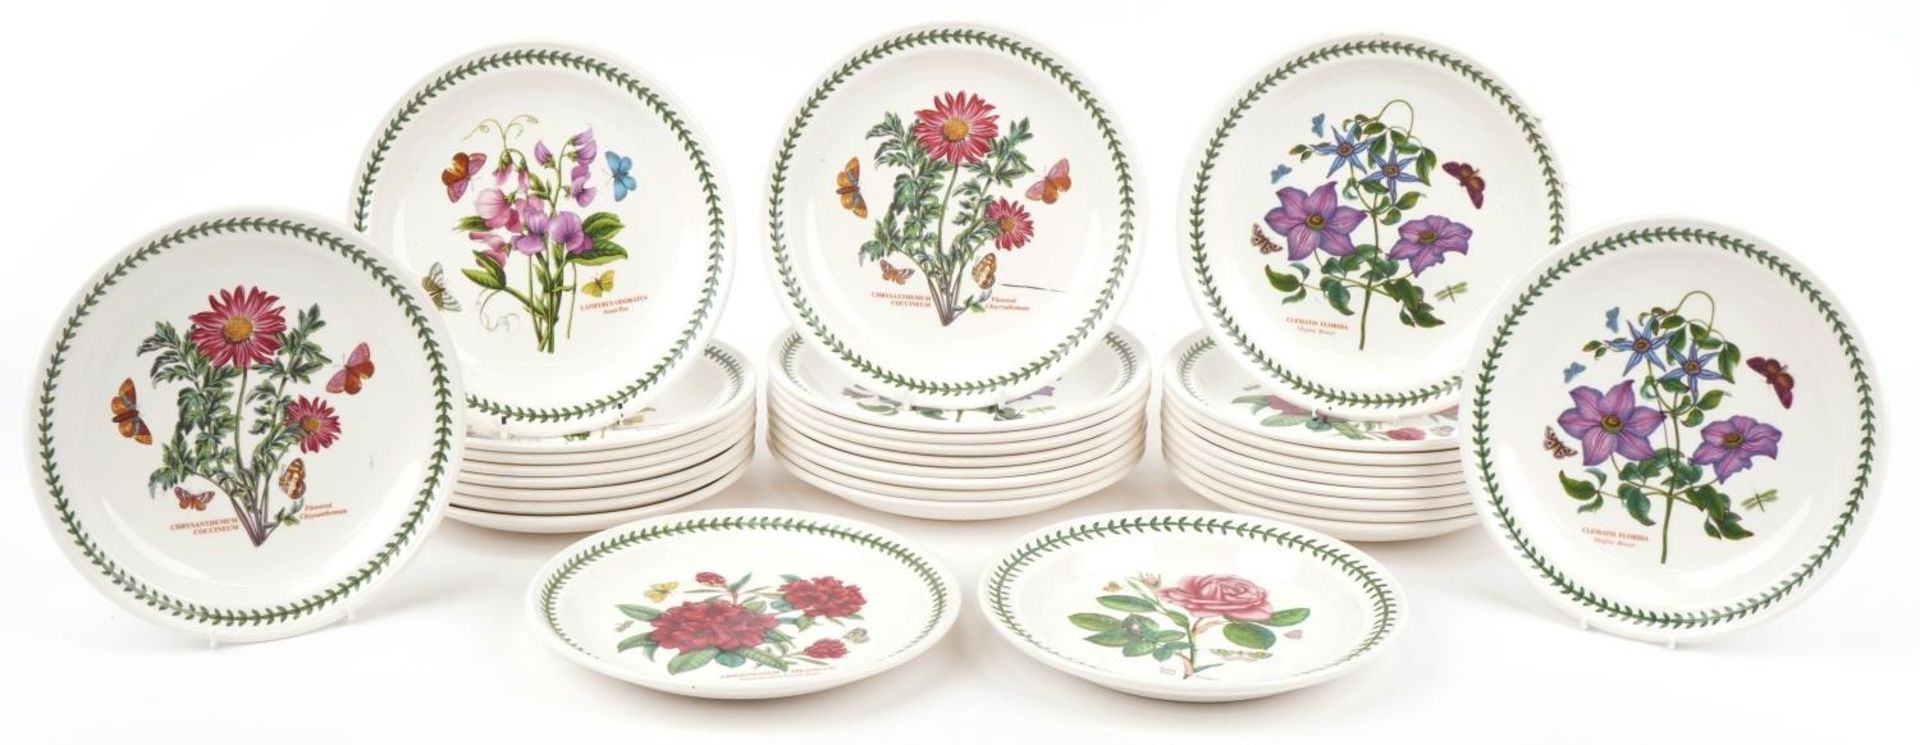 Thirty Portmeirion Botanic Garden dinner plates, 27cm in diameter